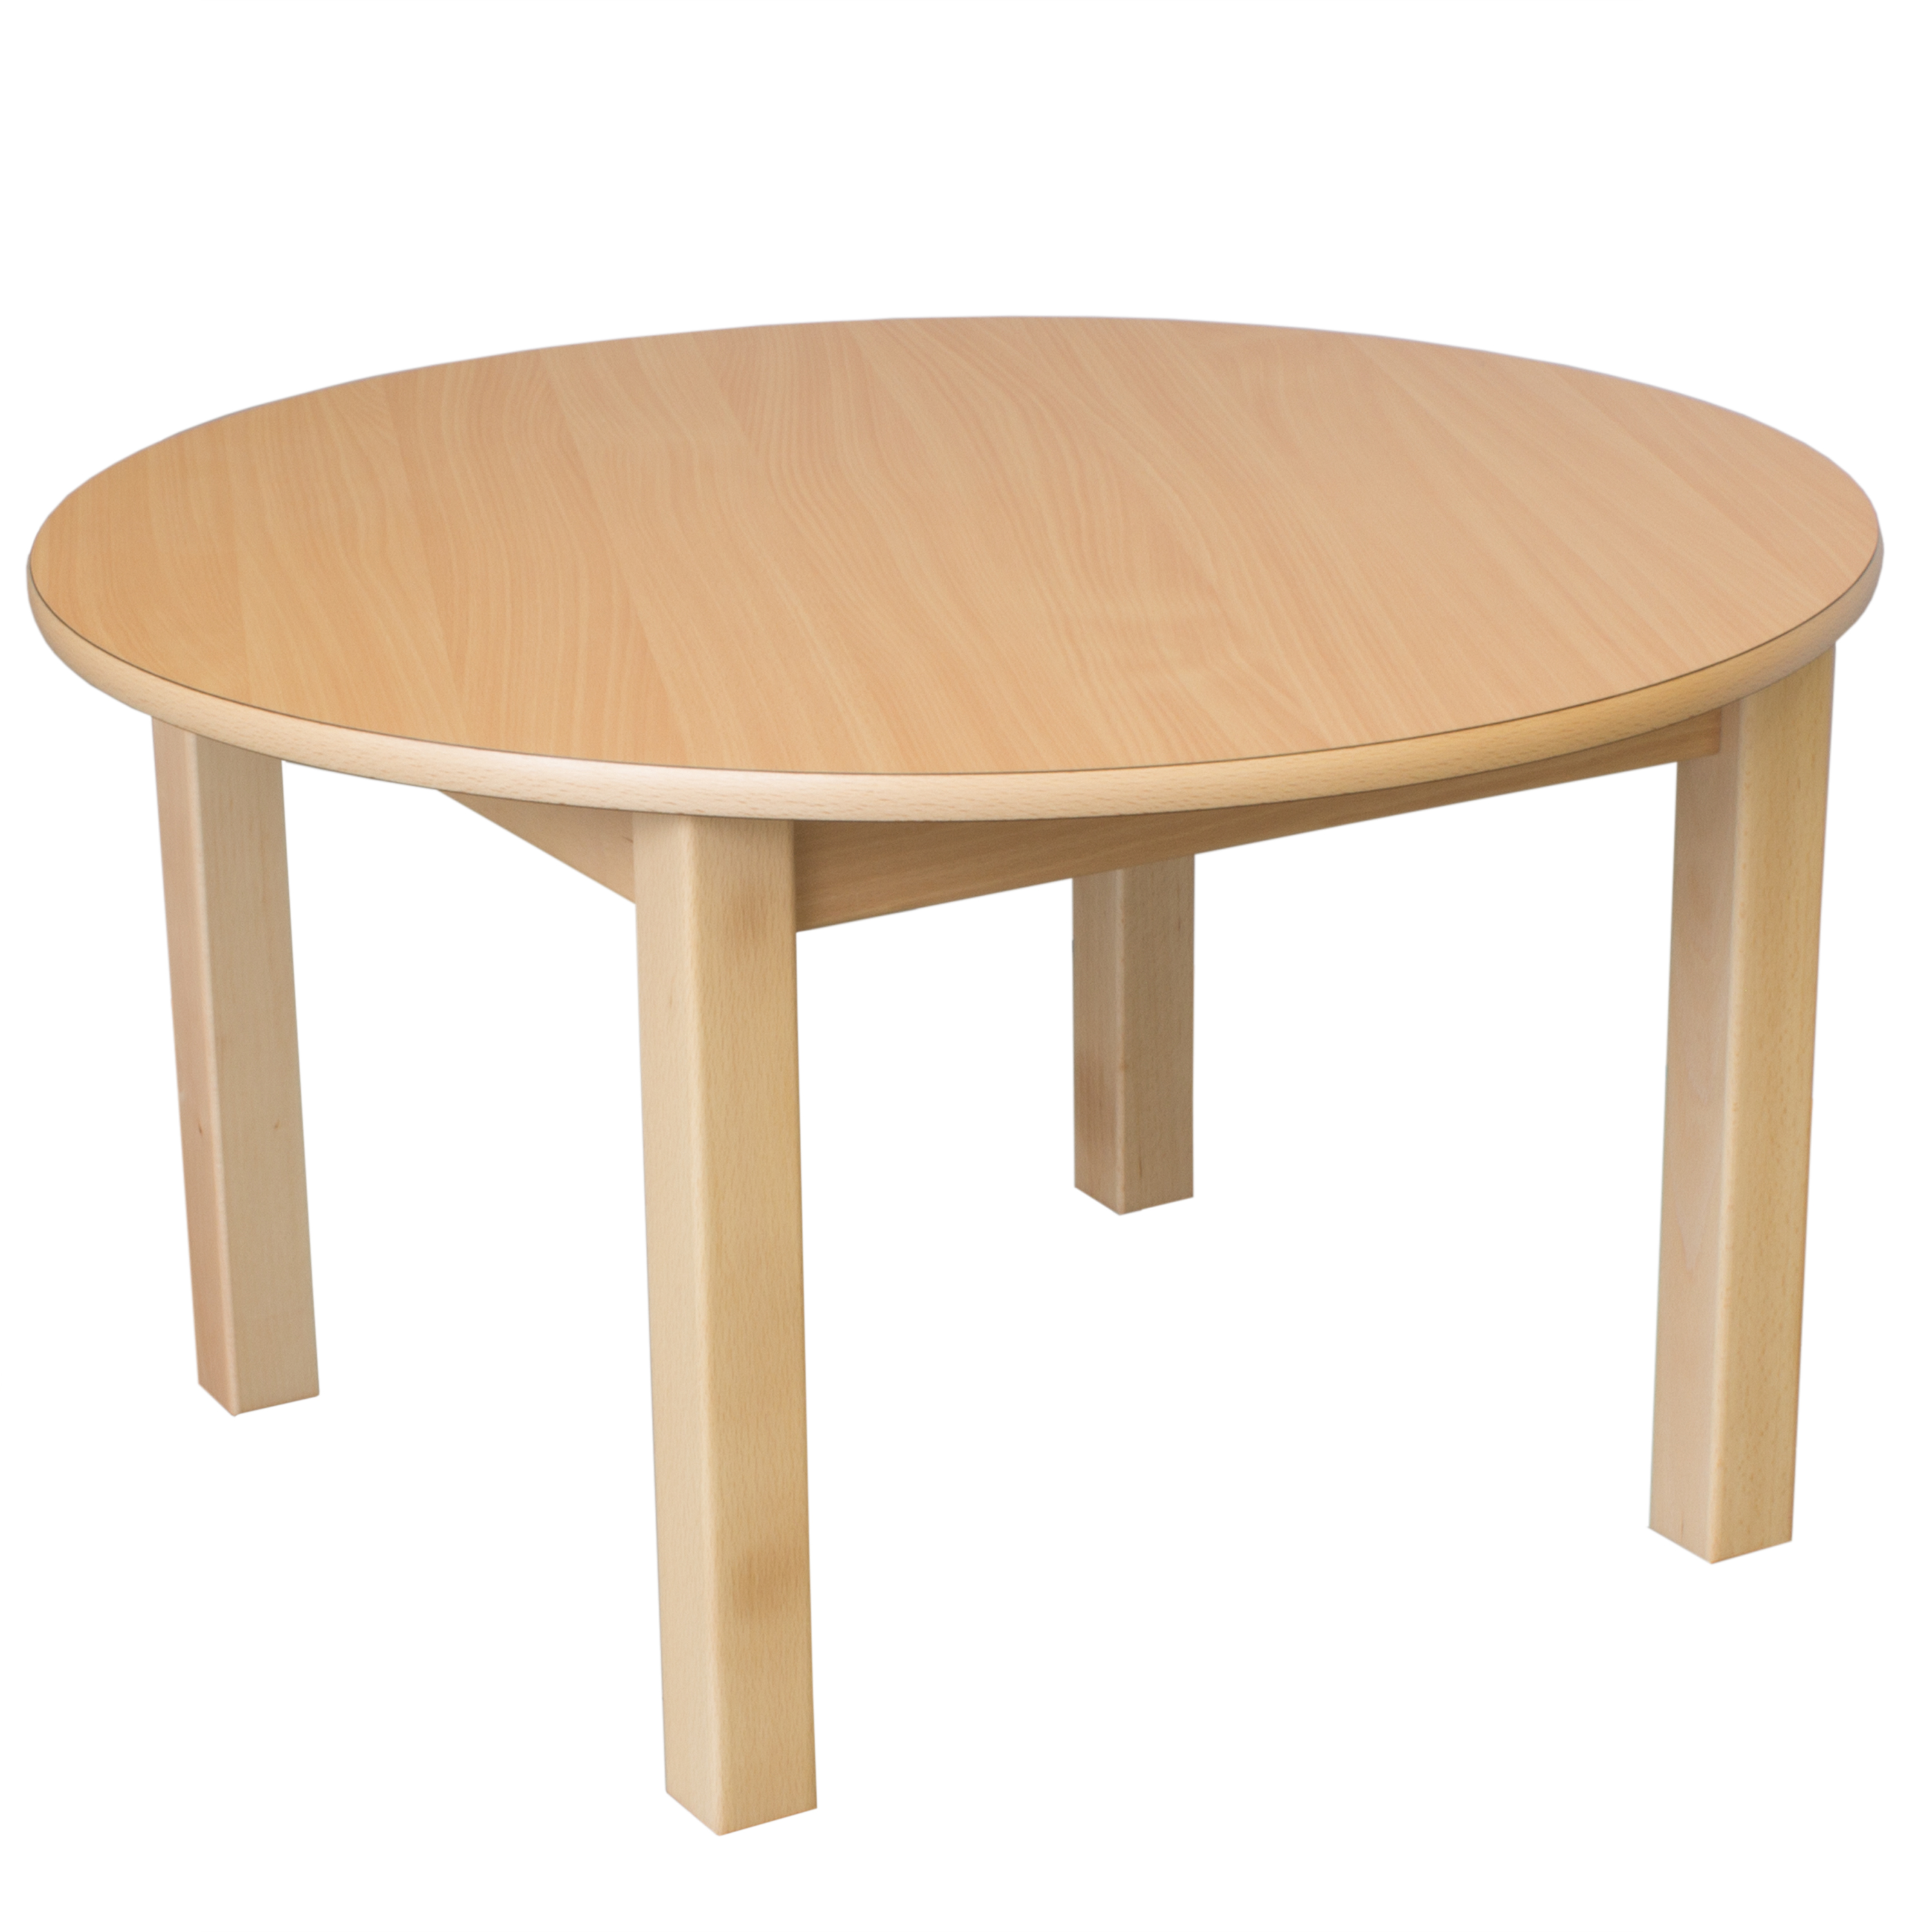 Runder Tisch, Durchmesser 60 cm, Tischhöhe 52 cm